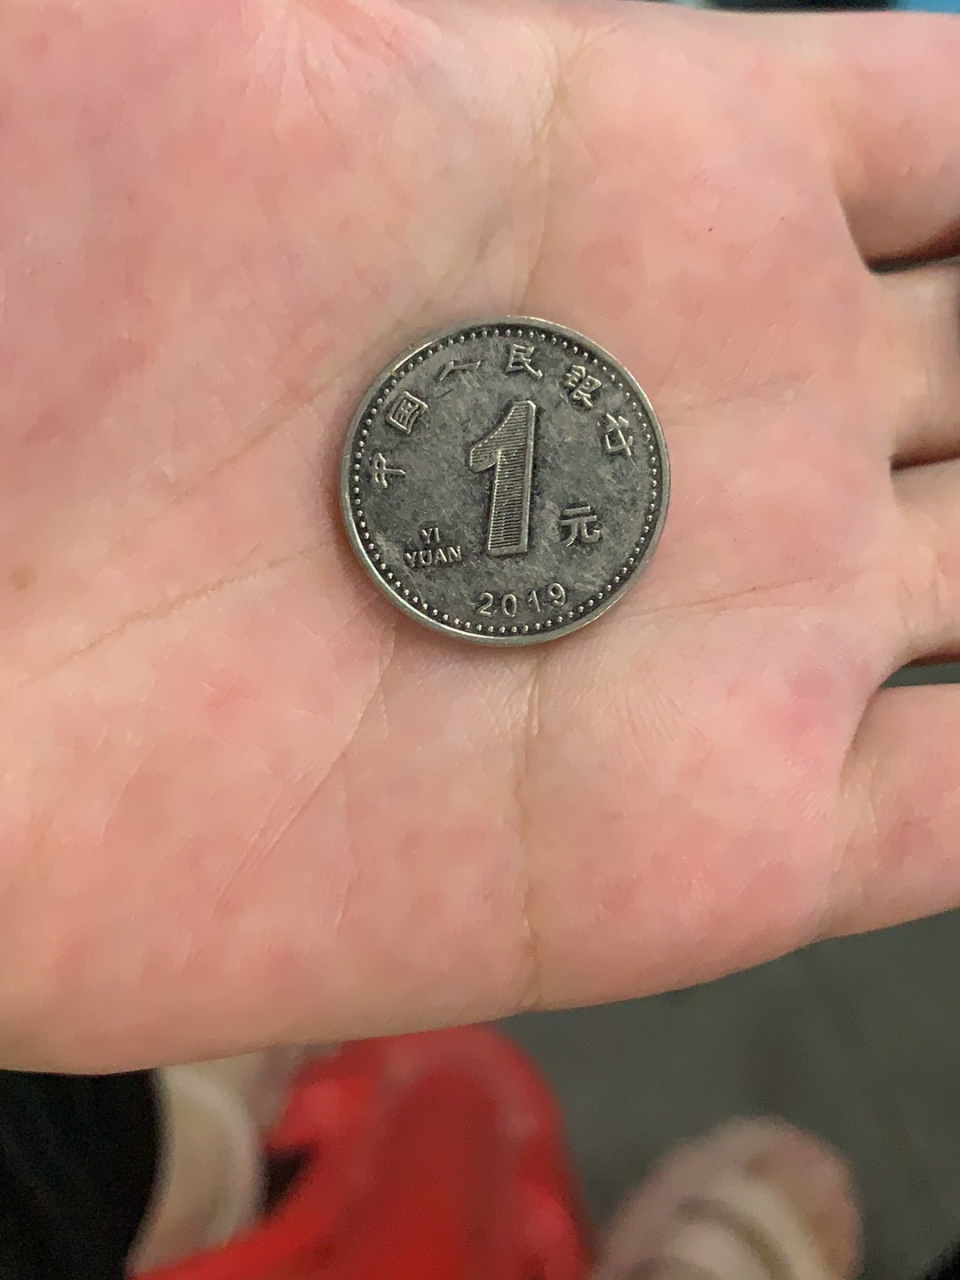 第一次看到,比一般的硬币要小一些,反面是一样的图案,正面不一样